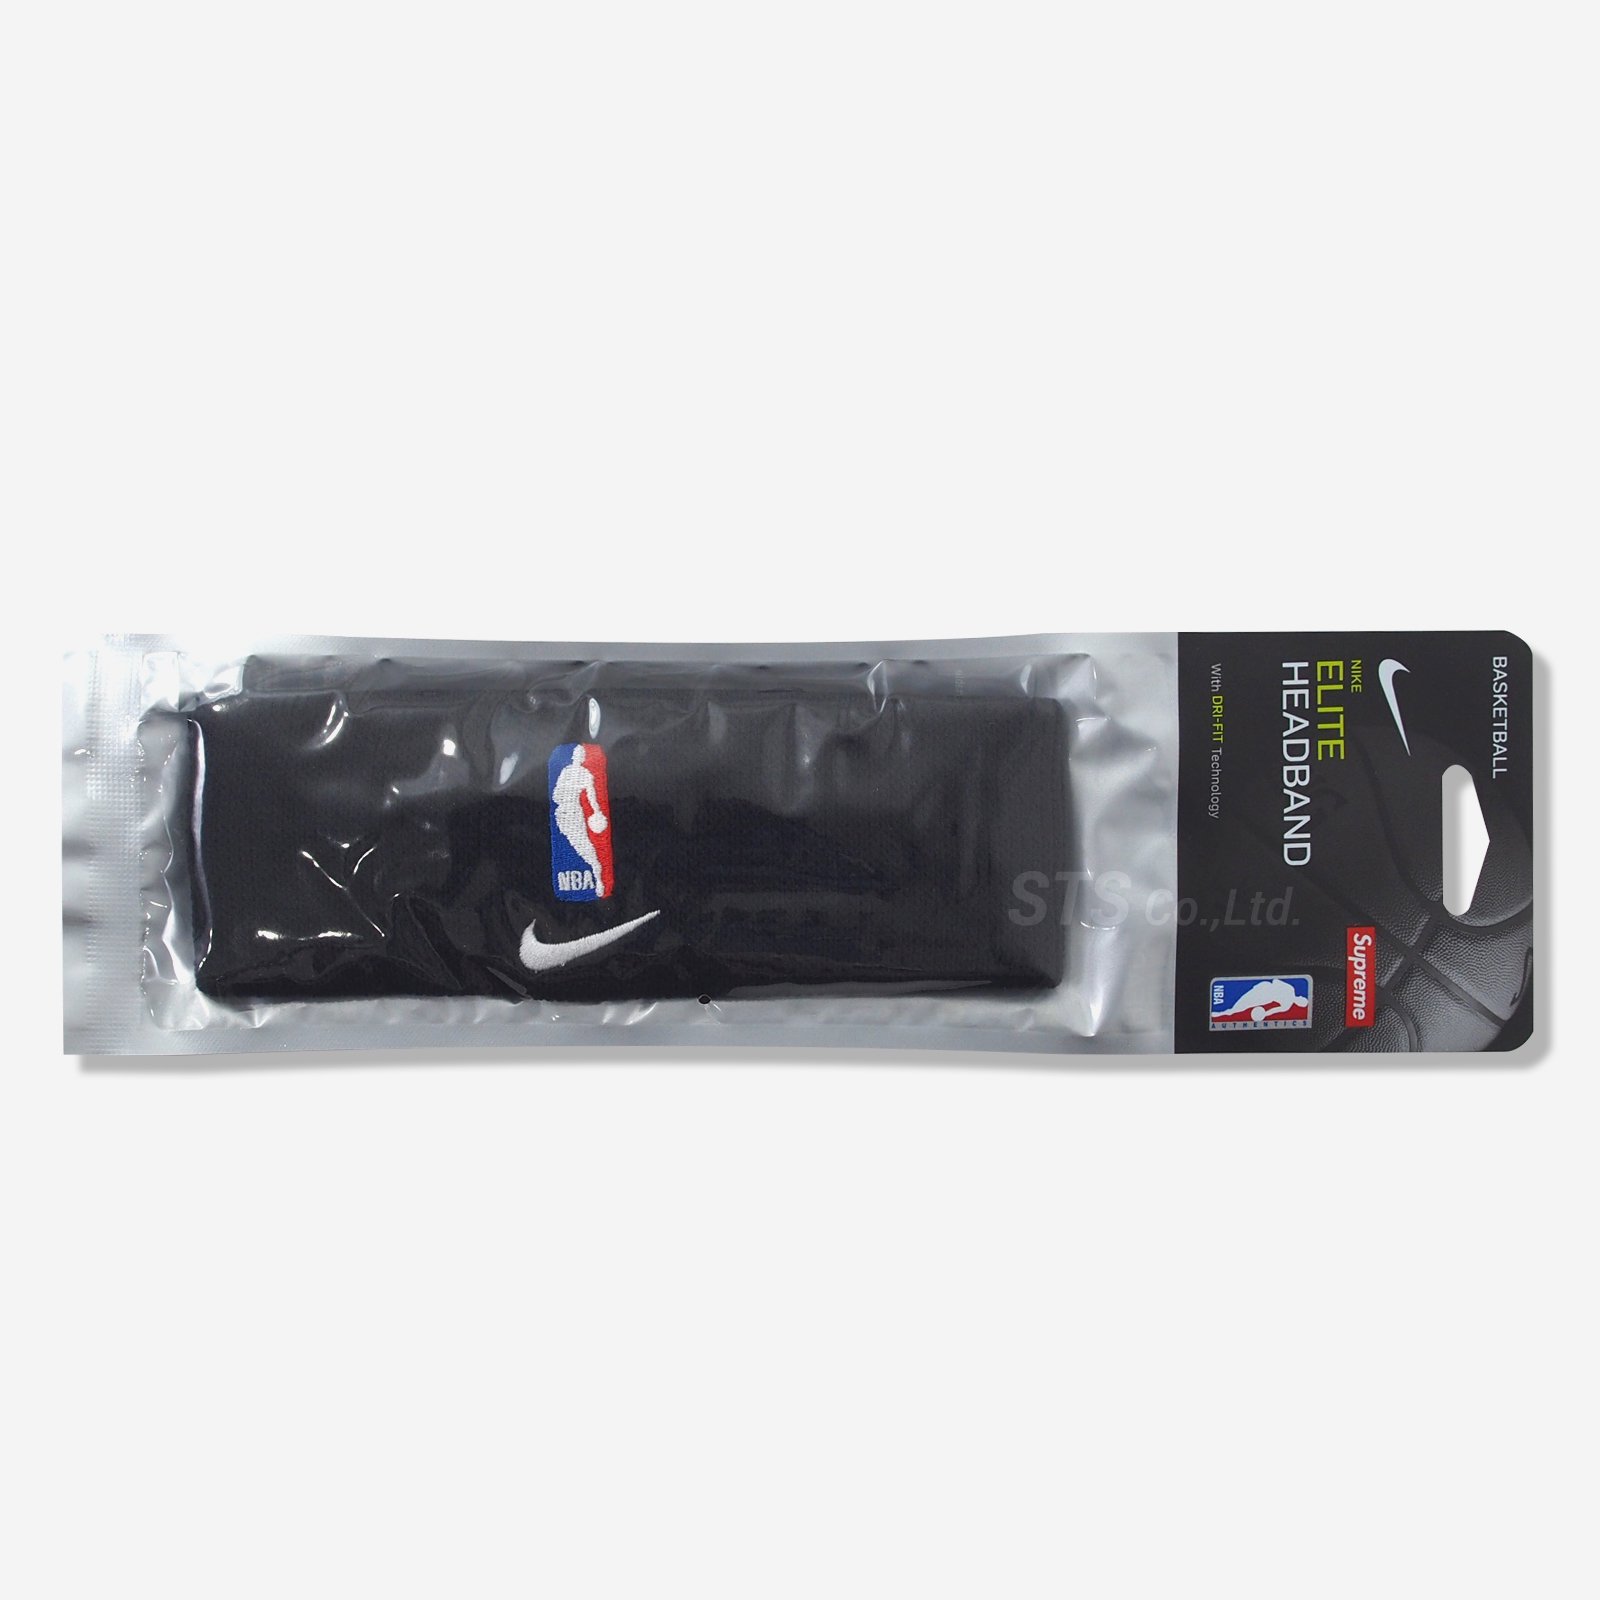 Supreme/Nike/NBA Headband - UG.SHAFT